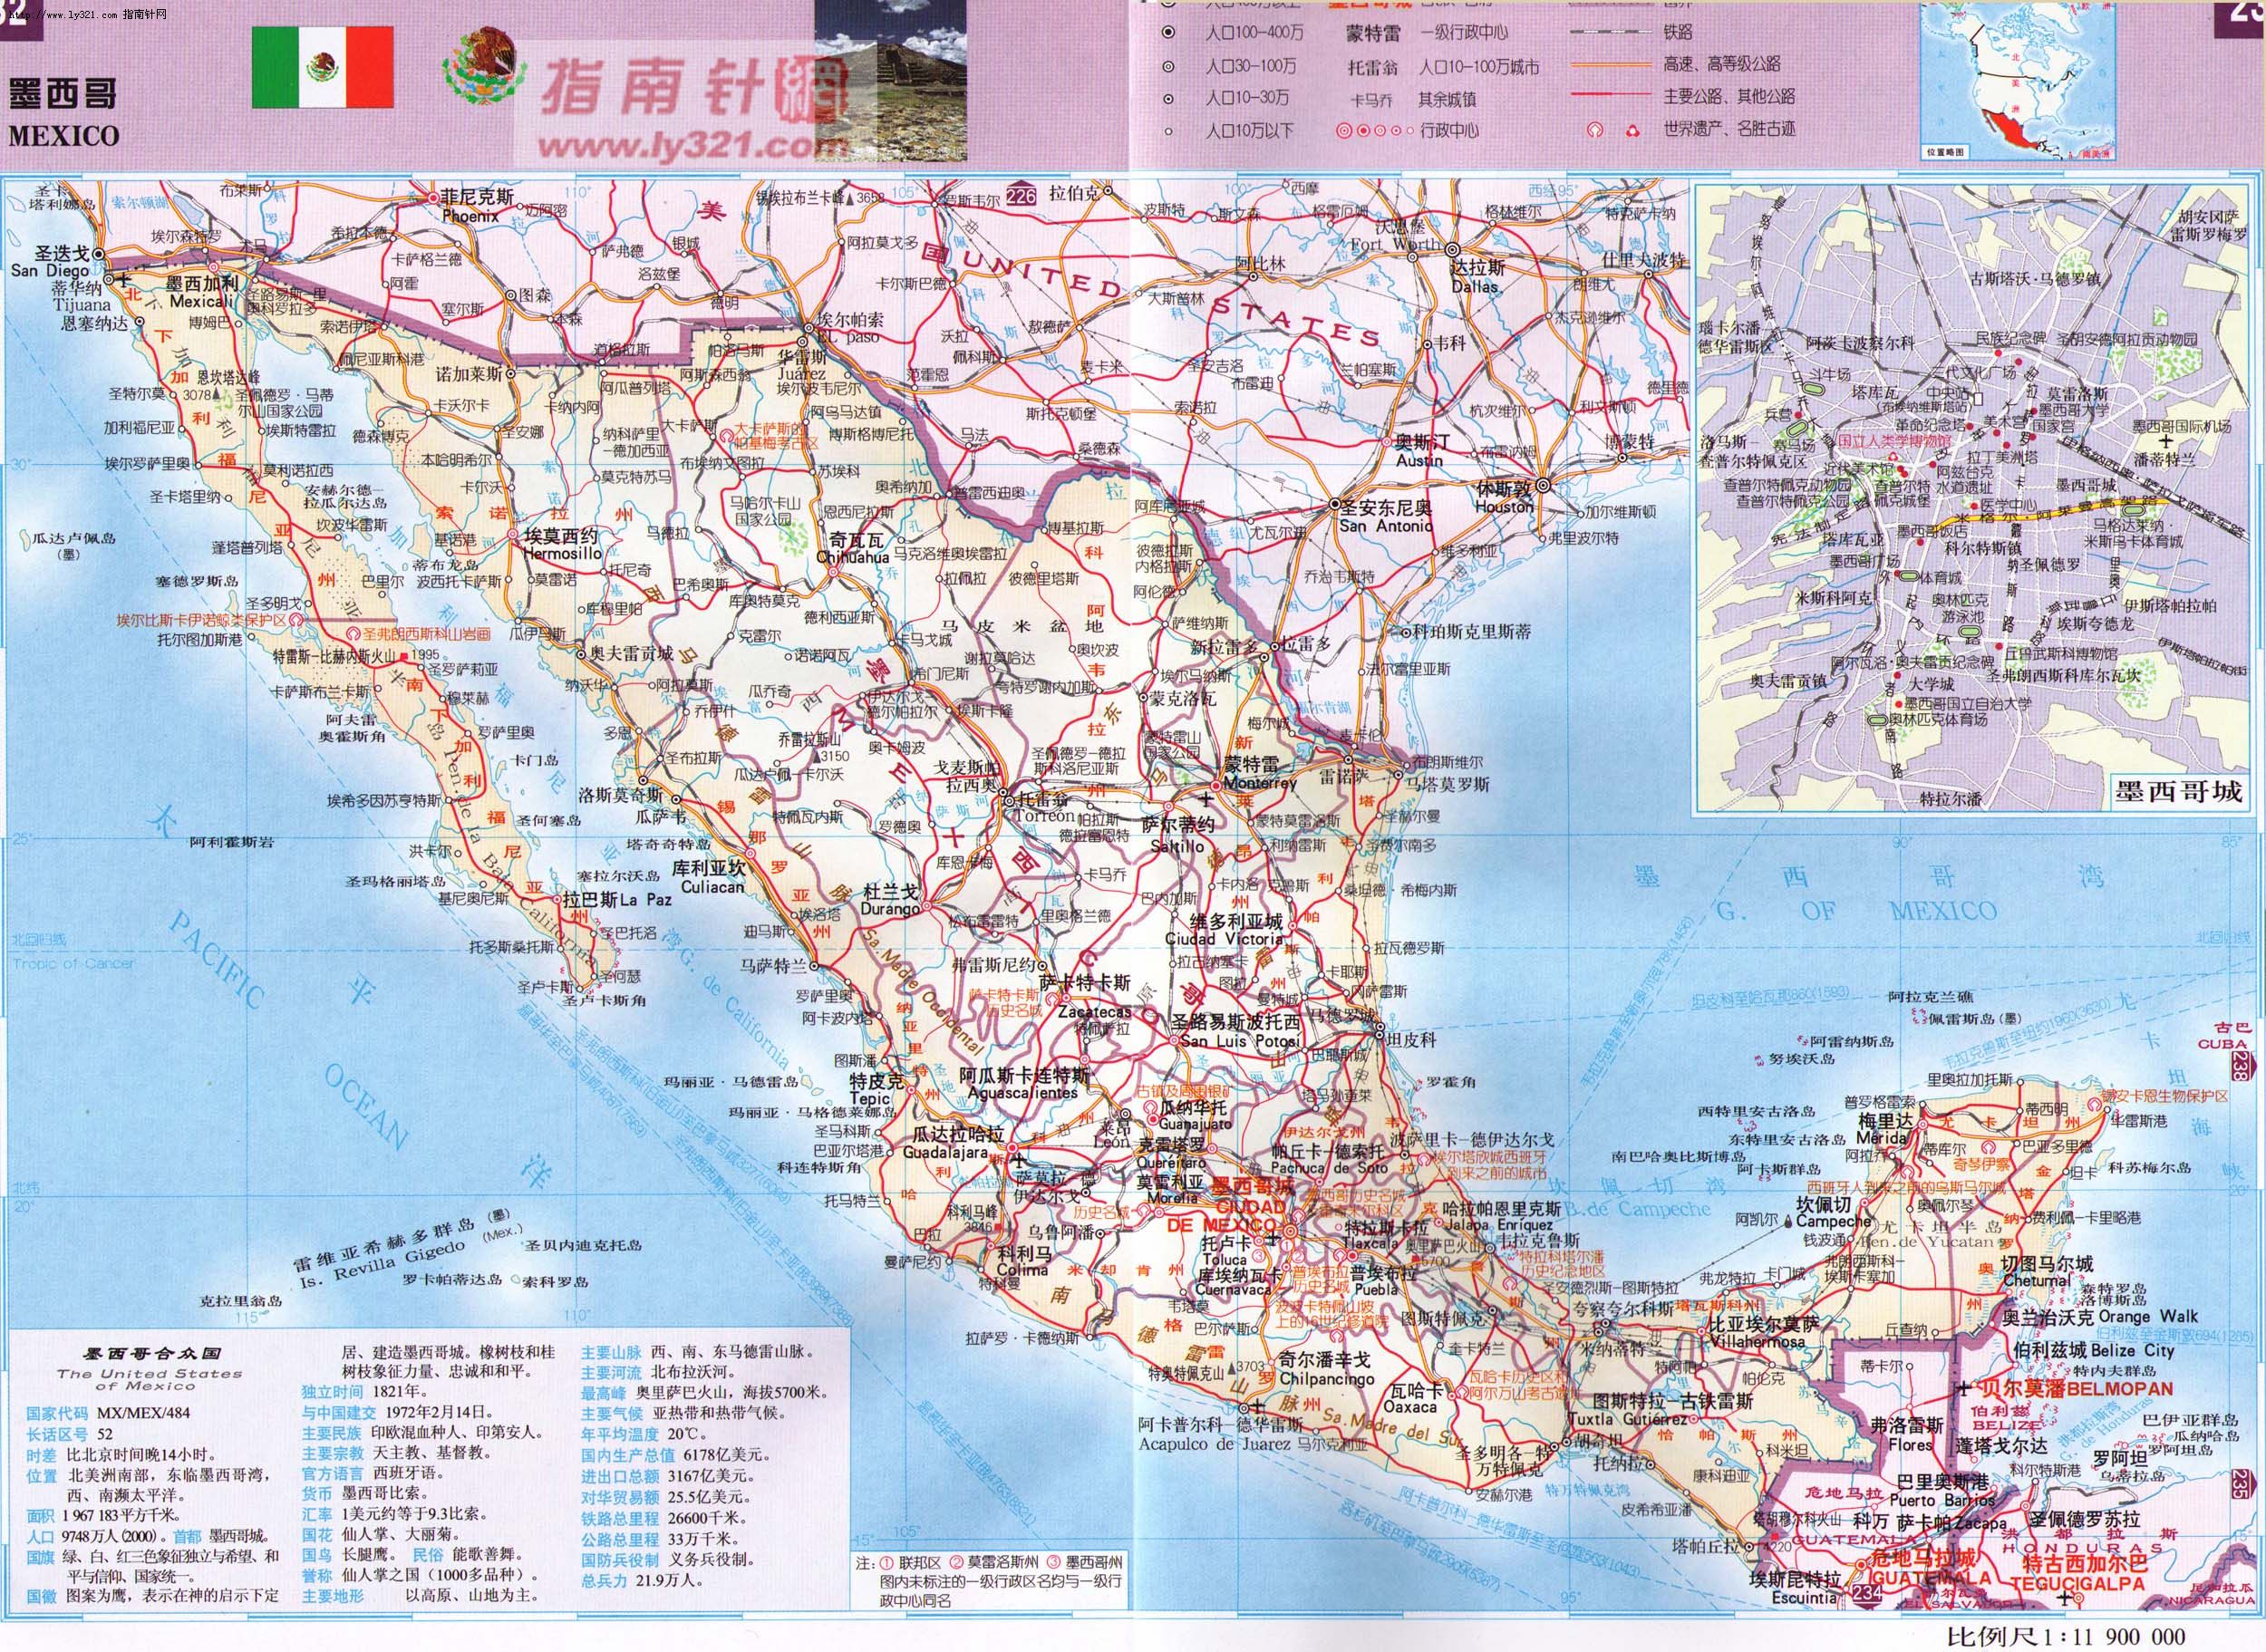 世界地圖-墨西哥.jpg